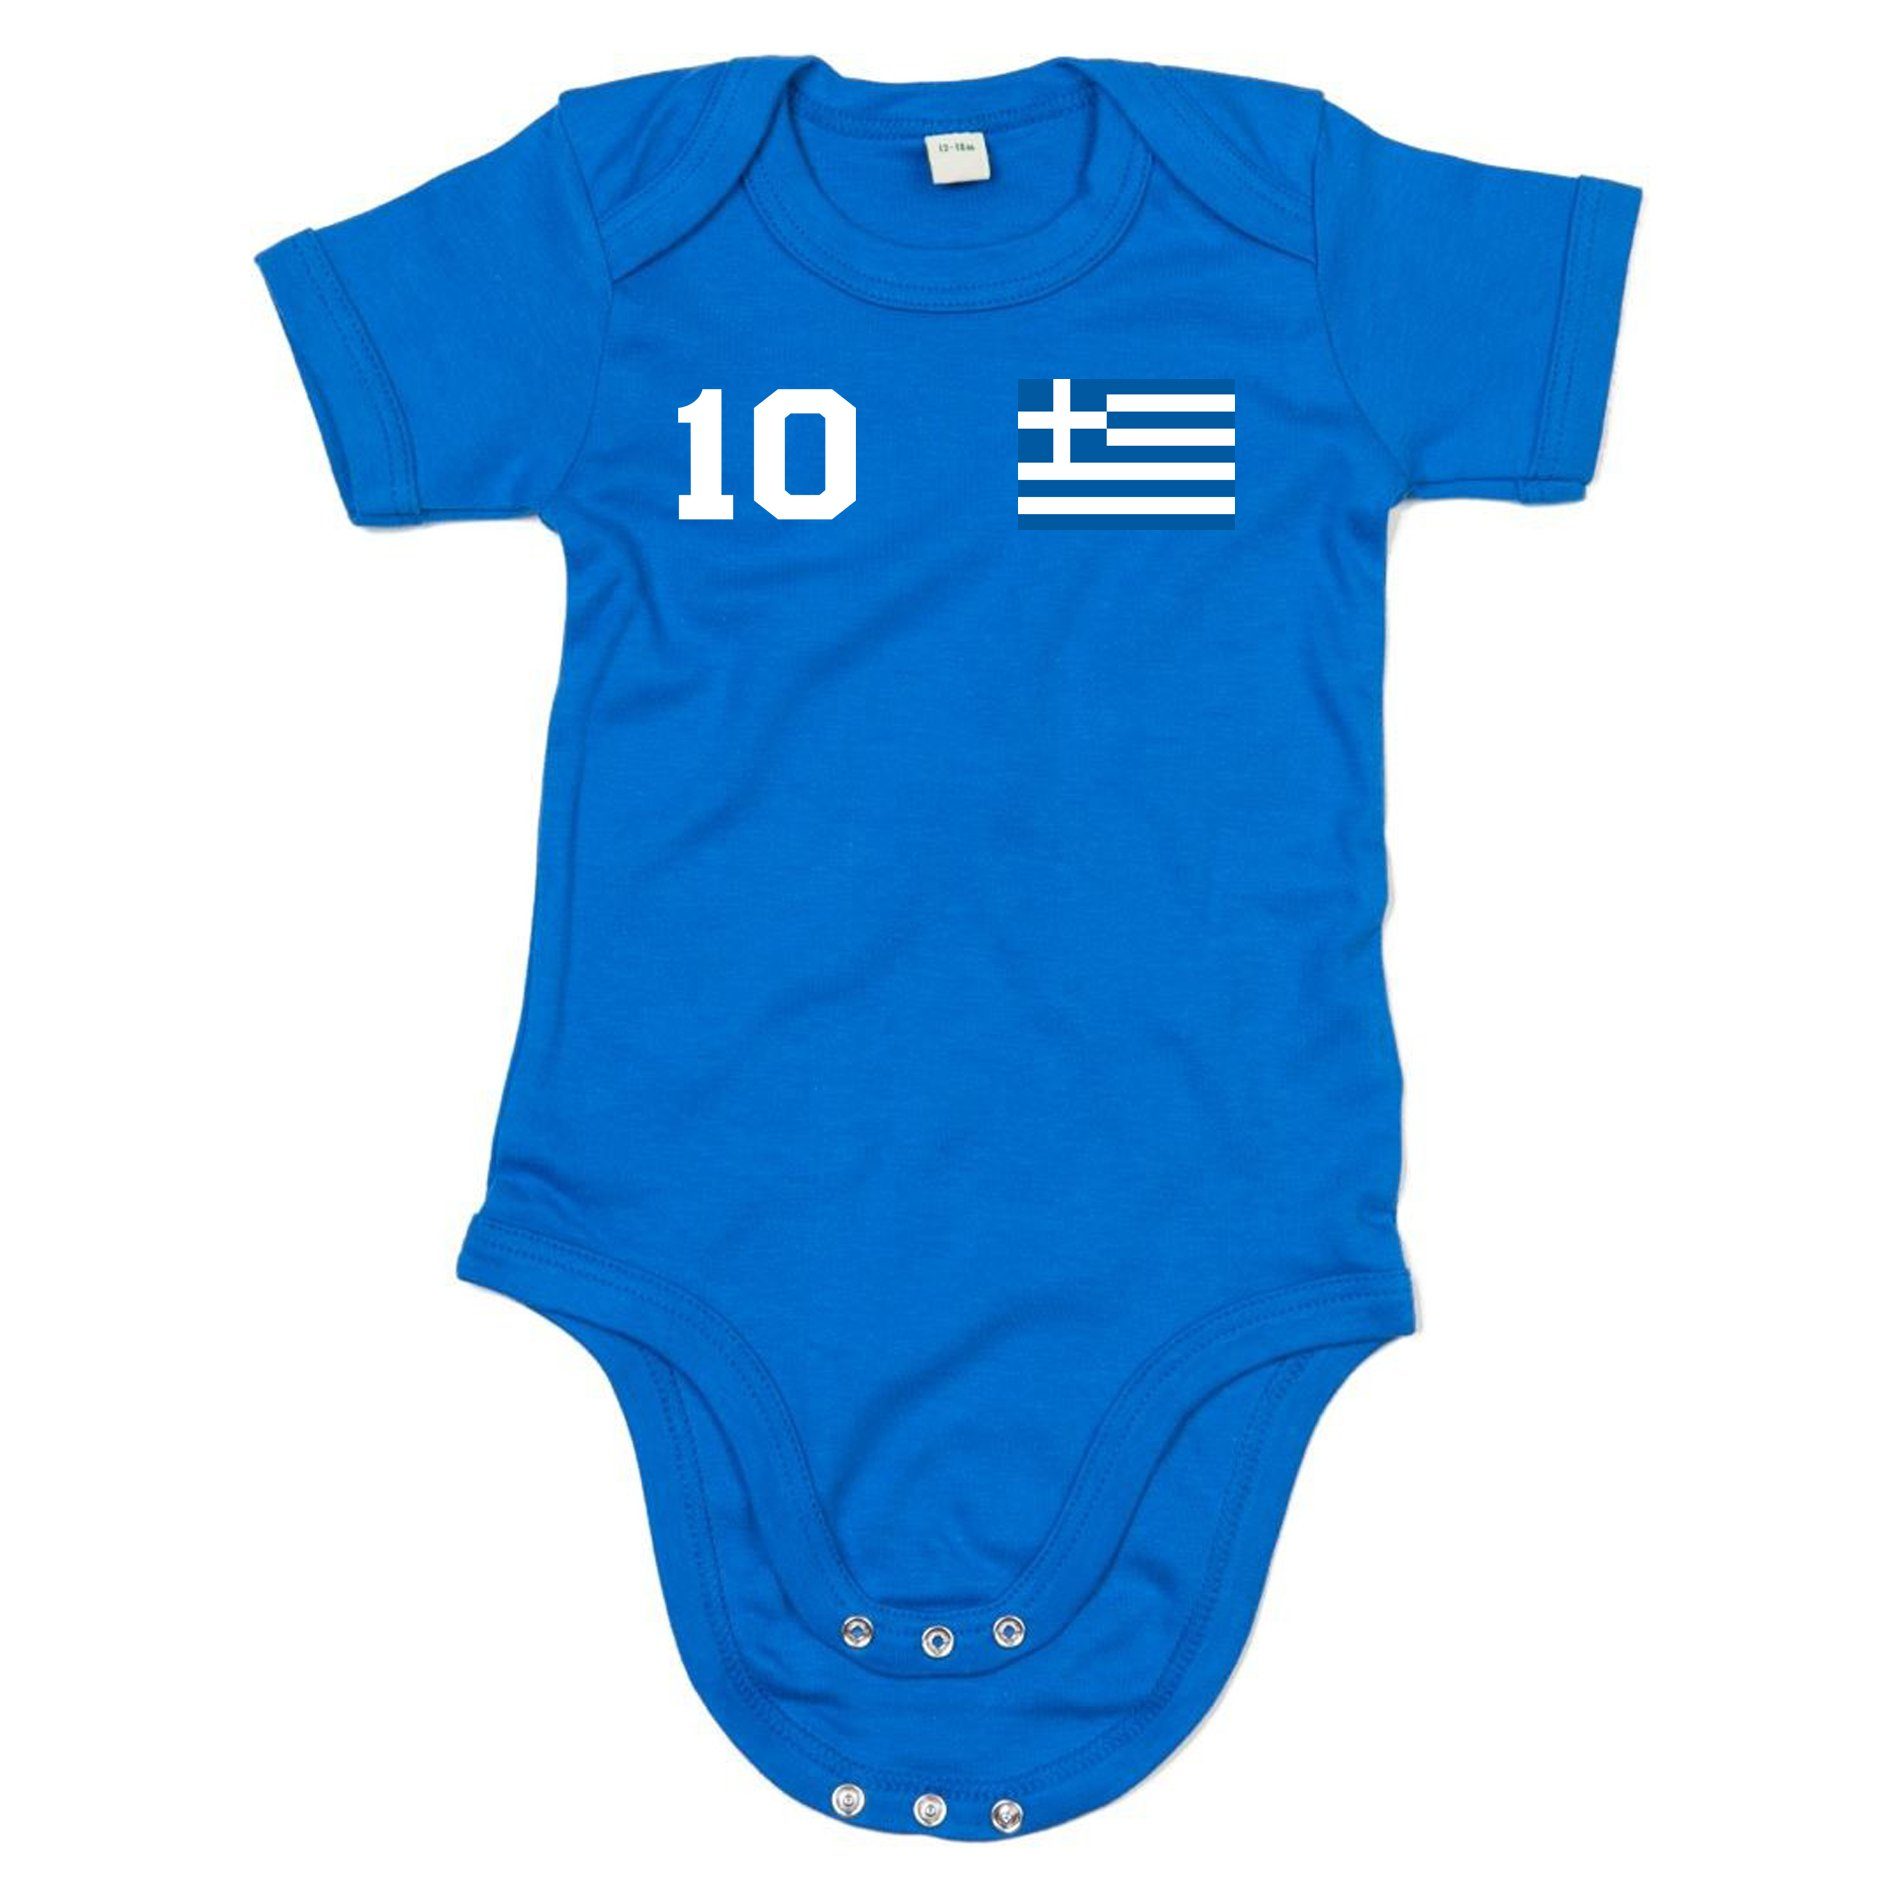 Blondie & Brownie Strampler Griechenland Kinder Baby Sport Trikot Body Fussball Meister EM Weiss/Blau | Sommeroveralls